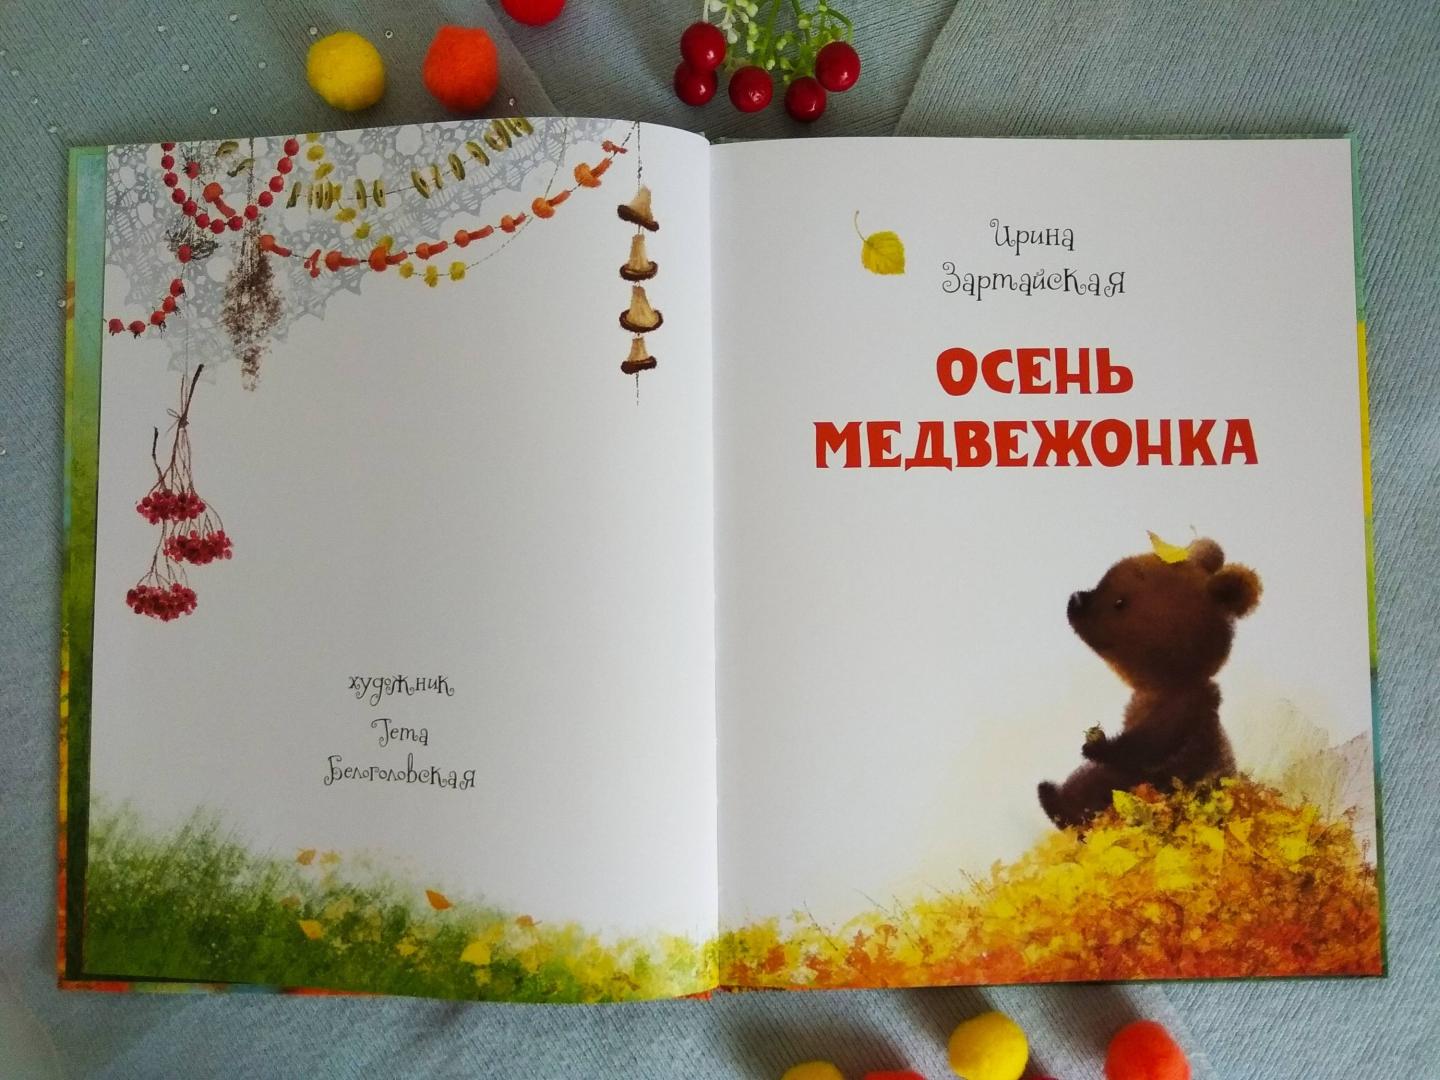 Купить книгу мишка. Зартайская осень медвежонка. Осень медвежонка книга.